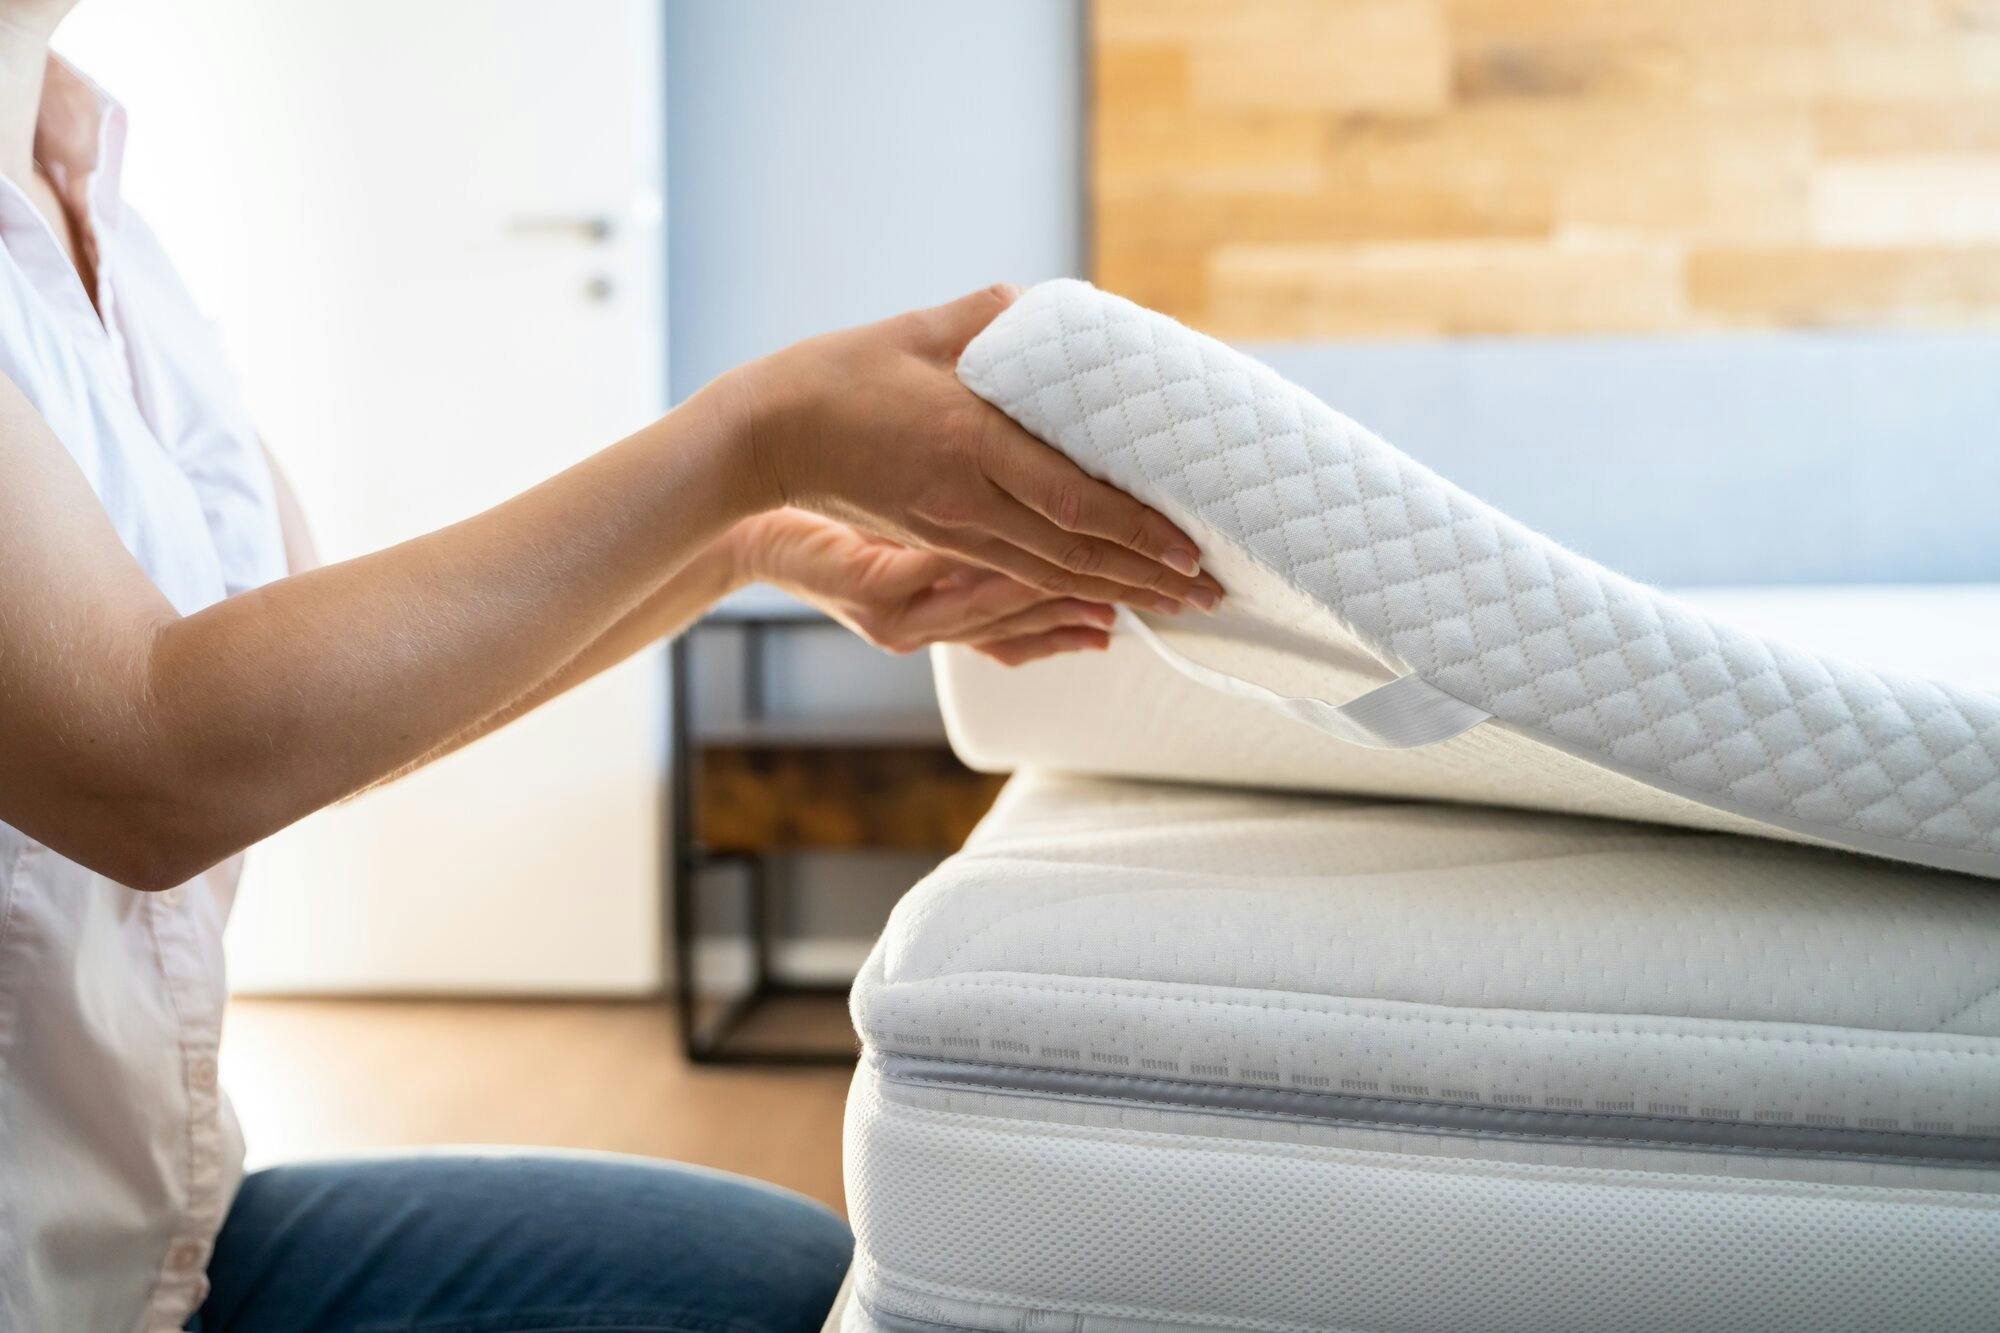 Woman attaching a memory foam mattress topper to a mattress.